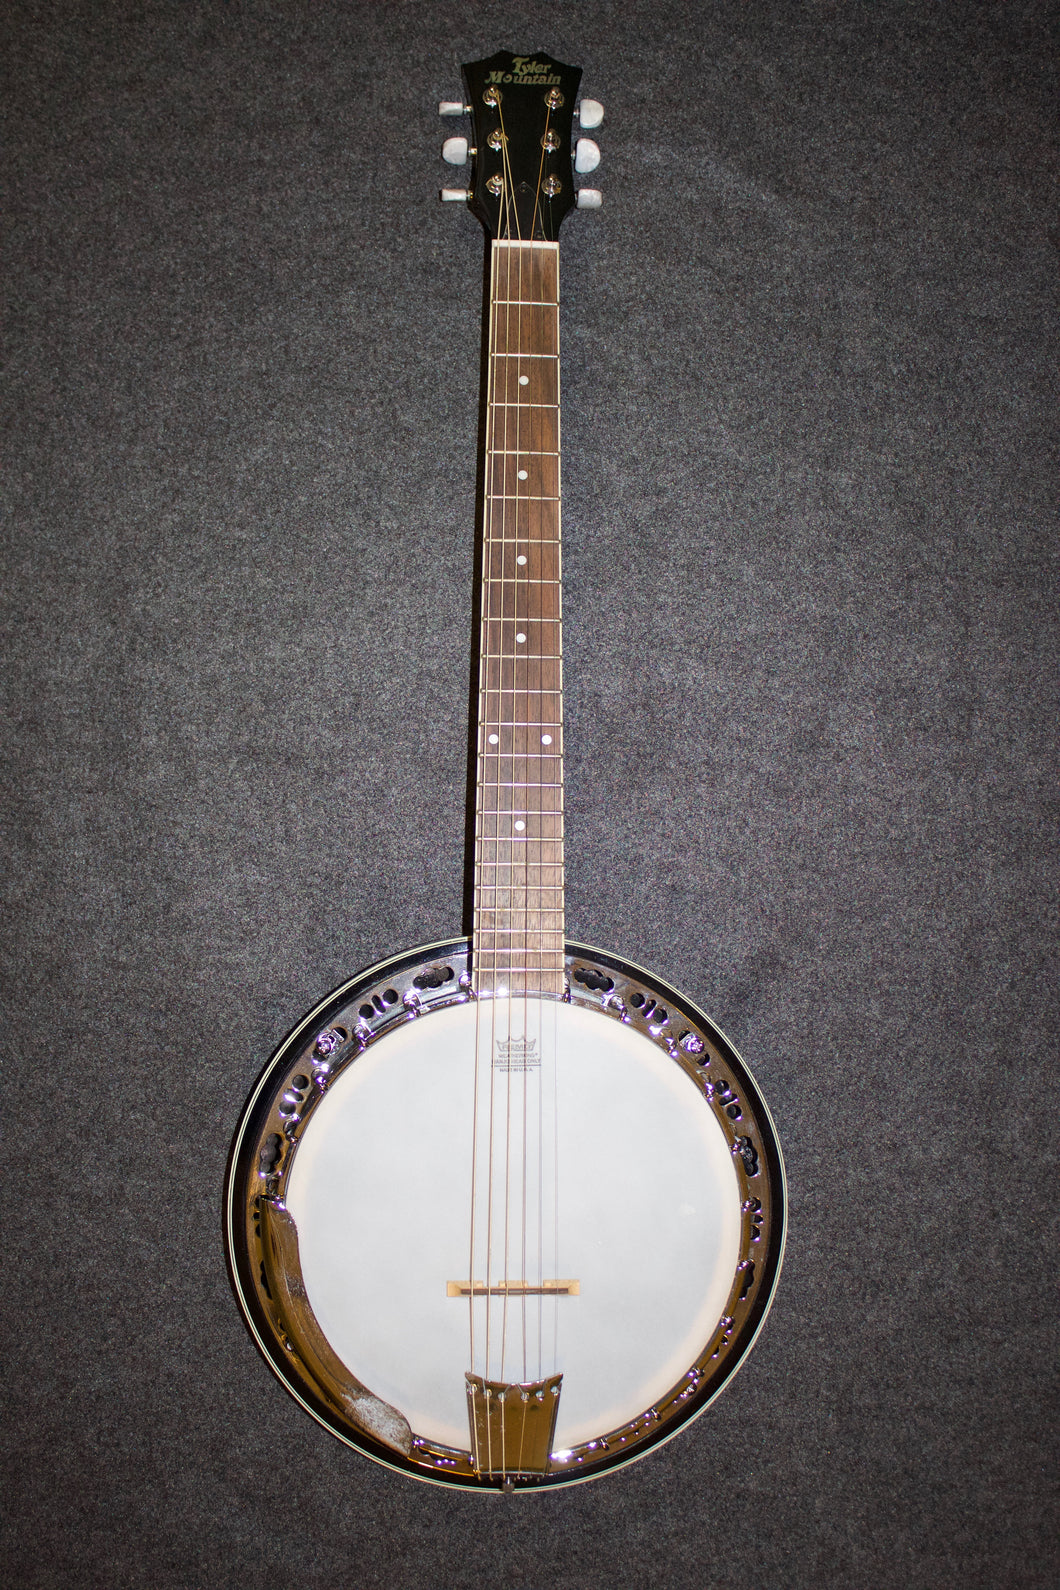 Tyler Mountain Banjo-Guitar c. 2010